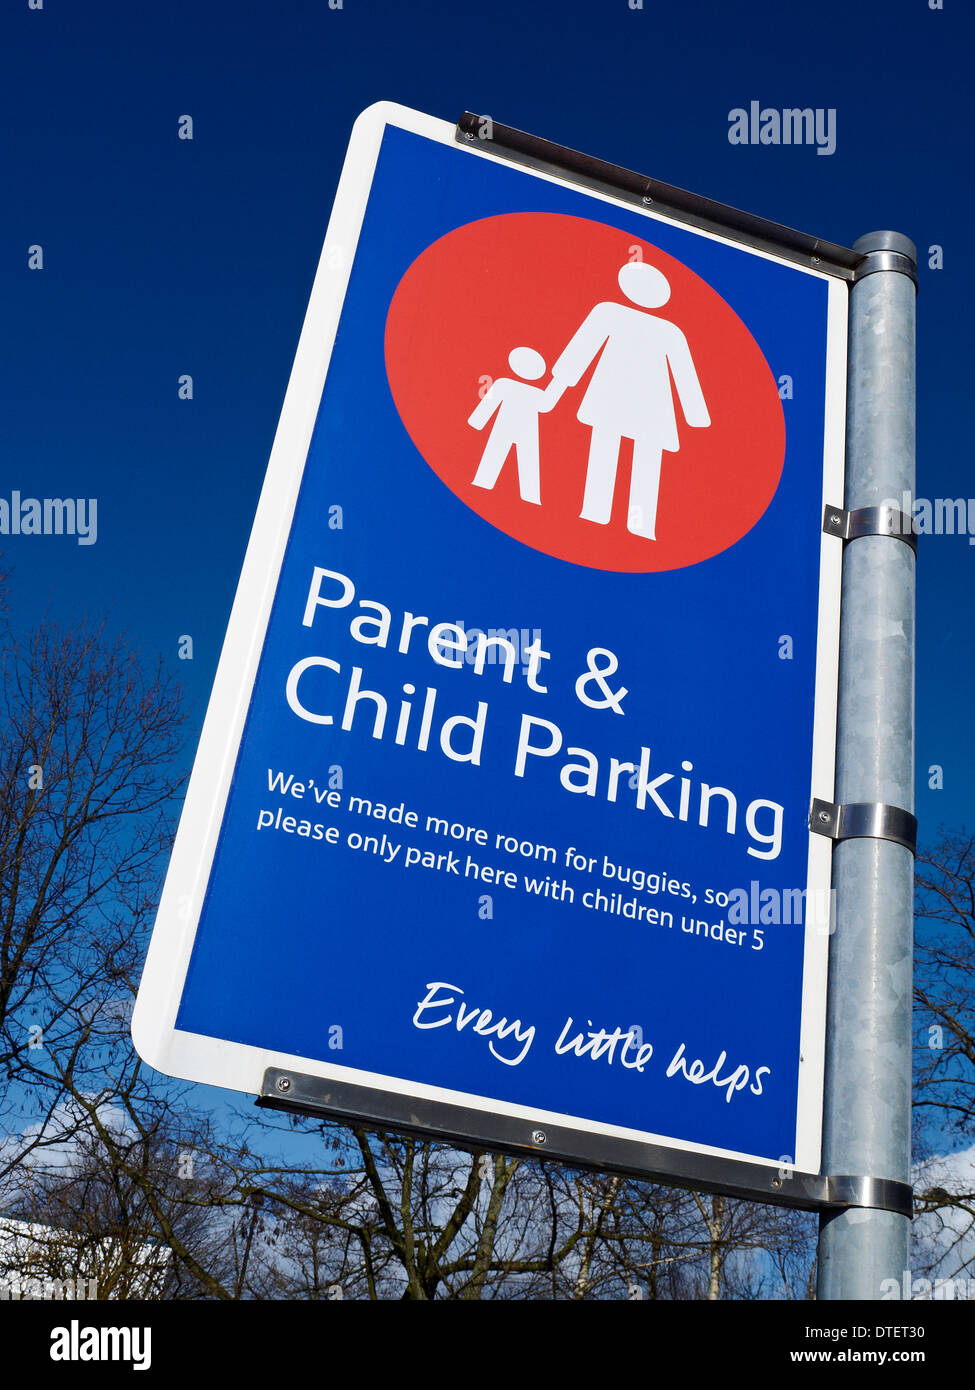 Parents et enfants Tesco UK parking sign Banque D'Images